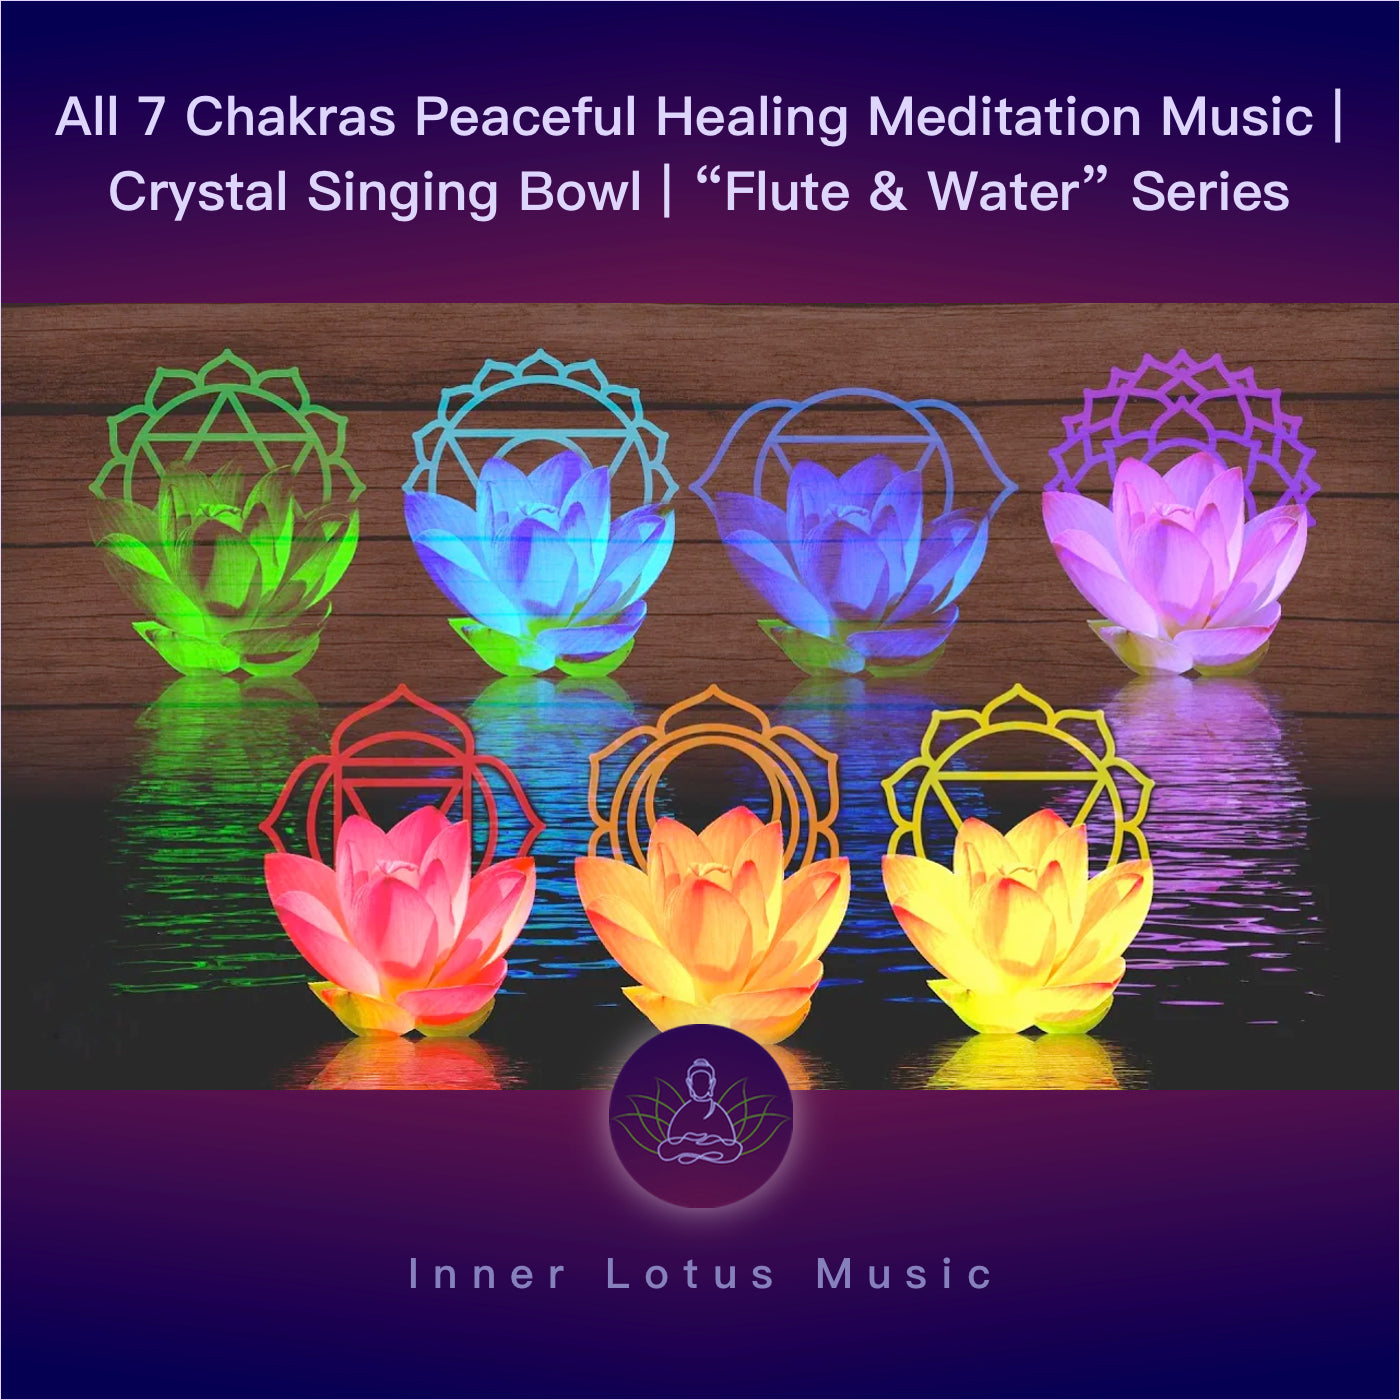 Les 7 Chakras | Musique Douce de Méditation | Bol de Cristal Chantant | Série “Flûte & Eau”